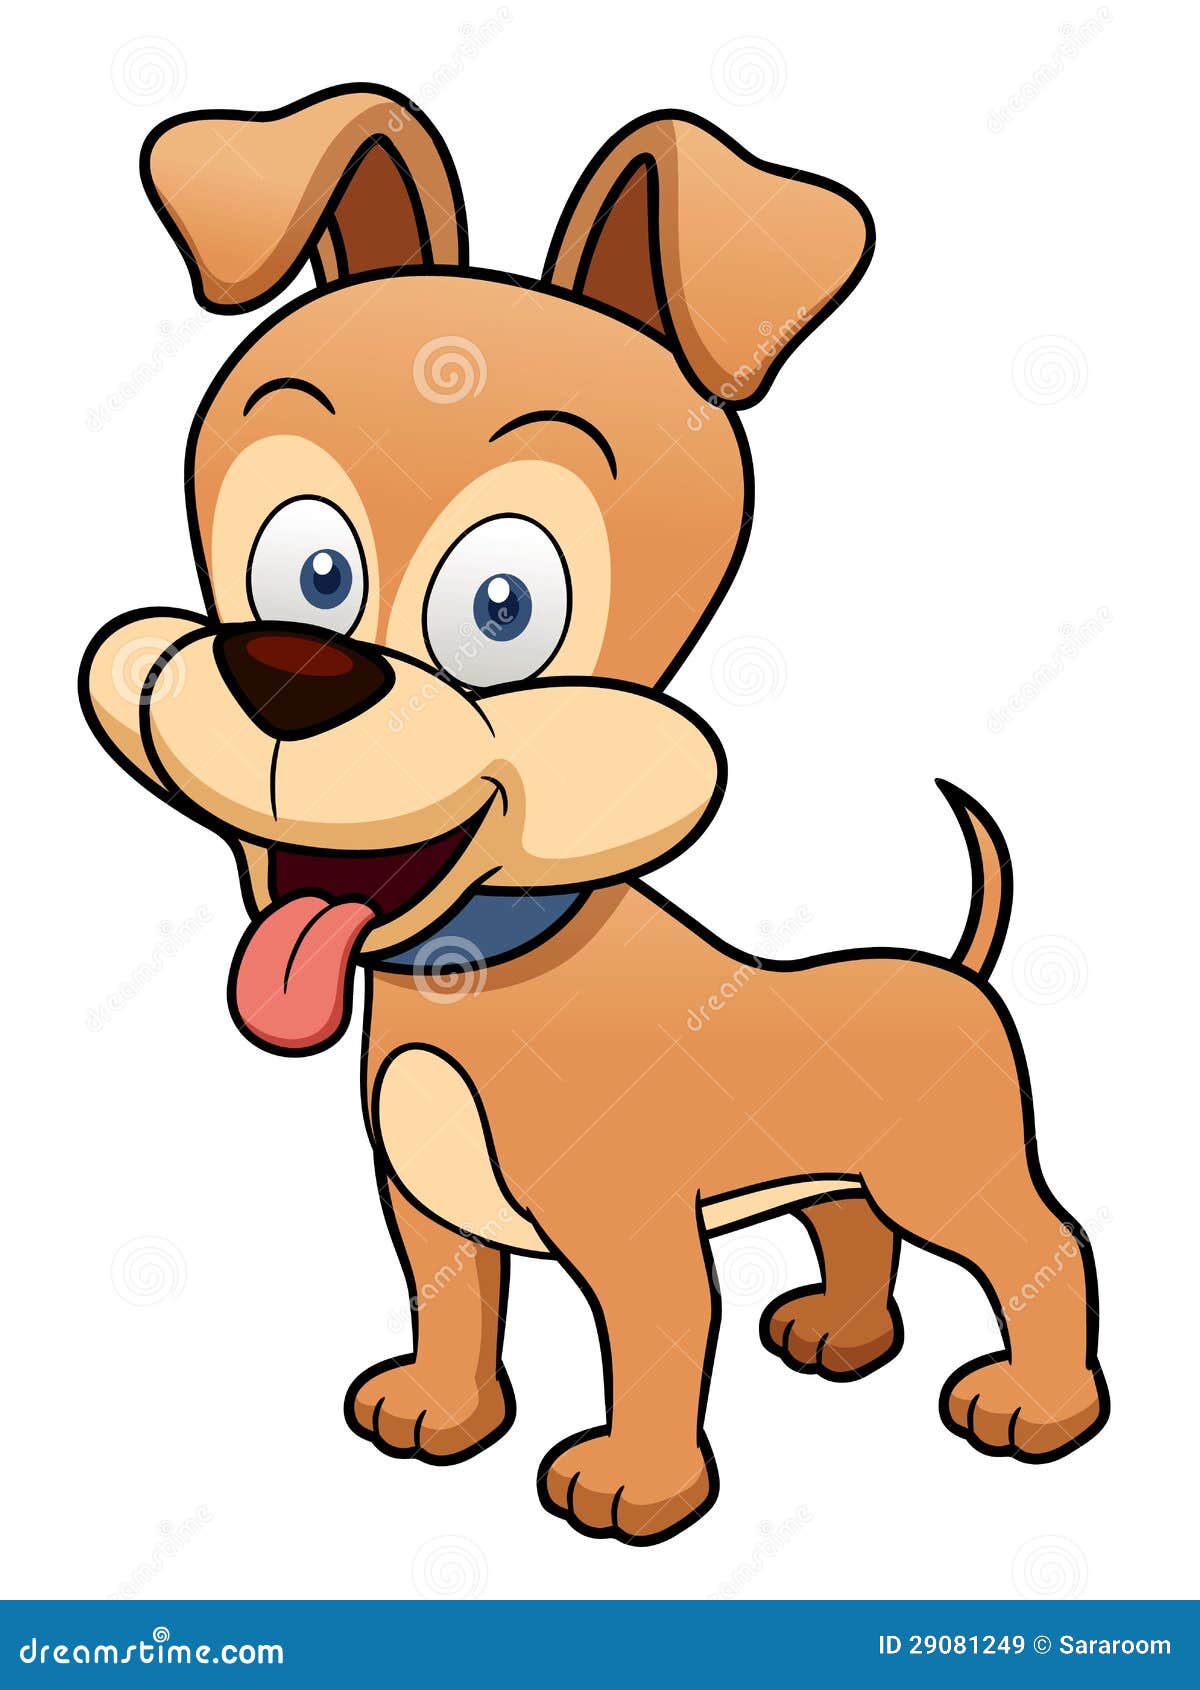 Cartoon Dog Royalty Free Stock Images - Image: 29081249